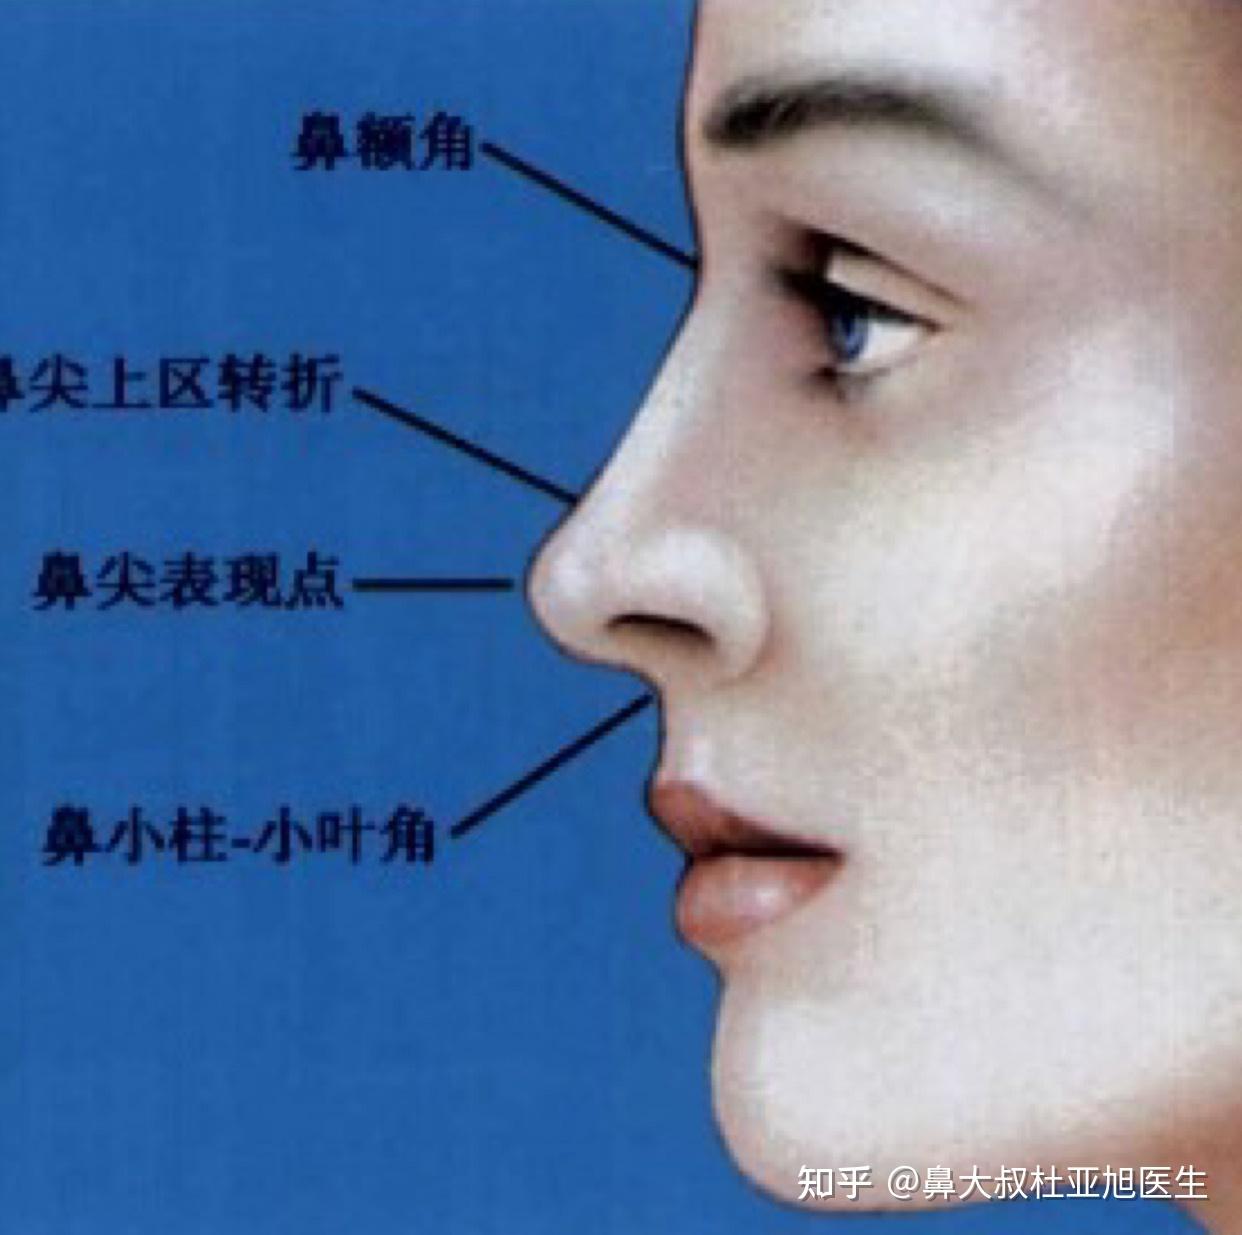 达拉斯鼻整形和鼻综合到底有什么区别 - 知乎